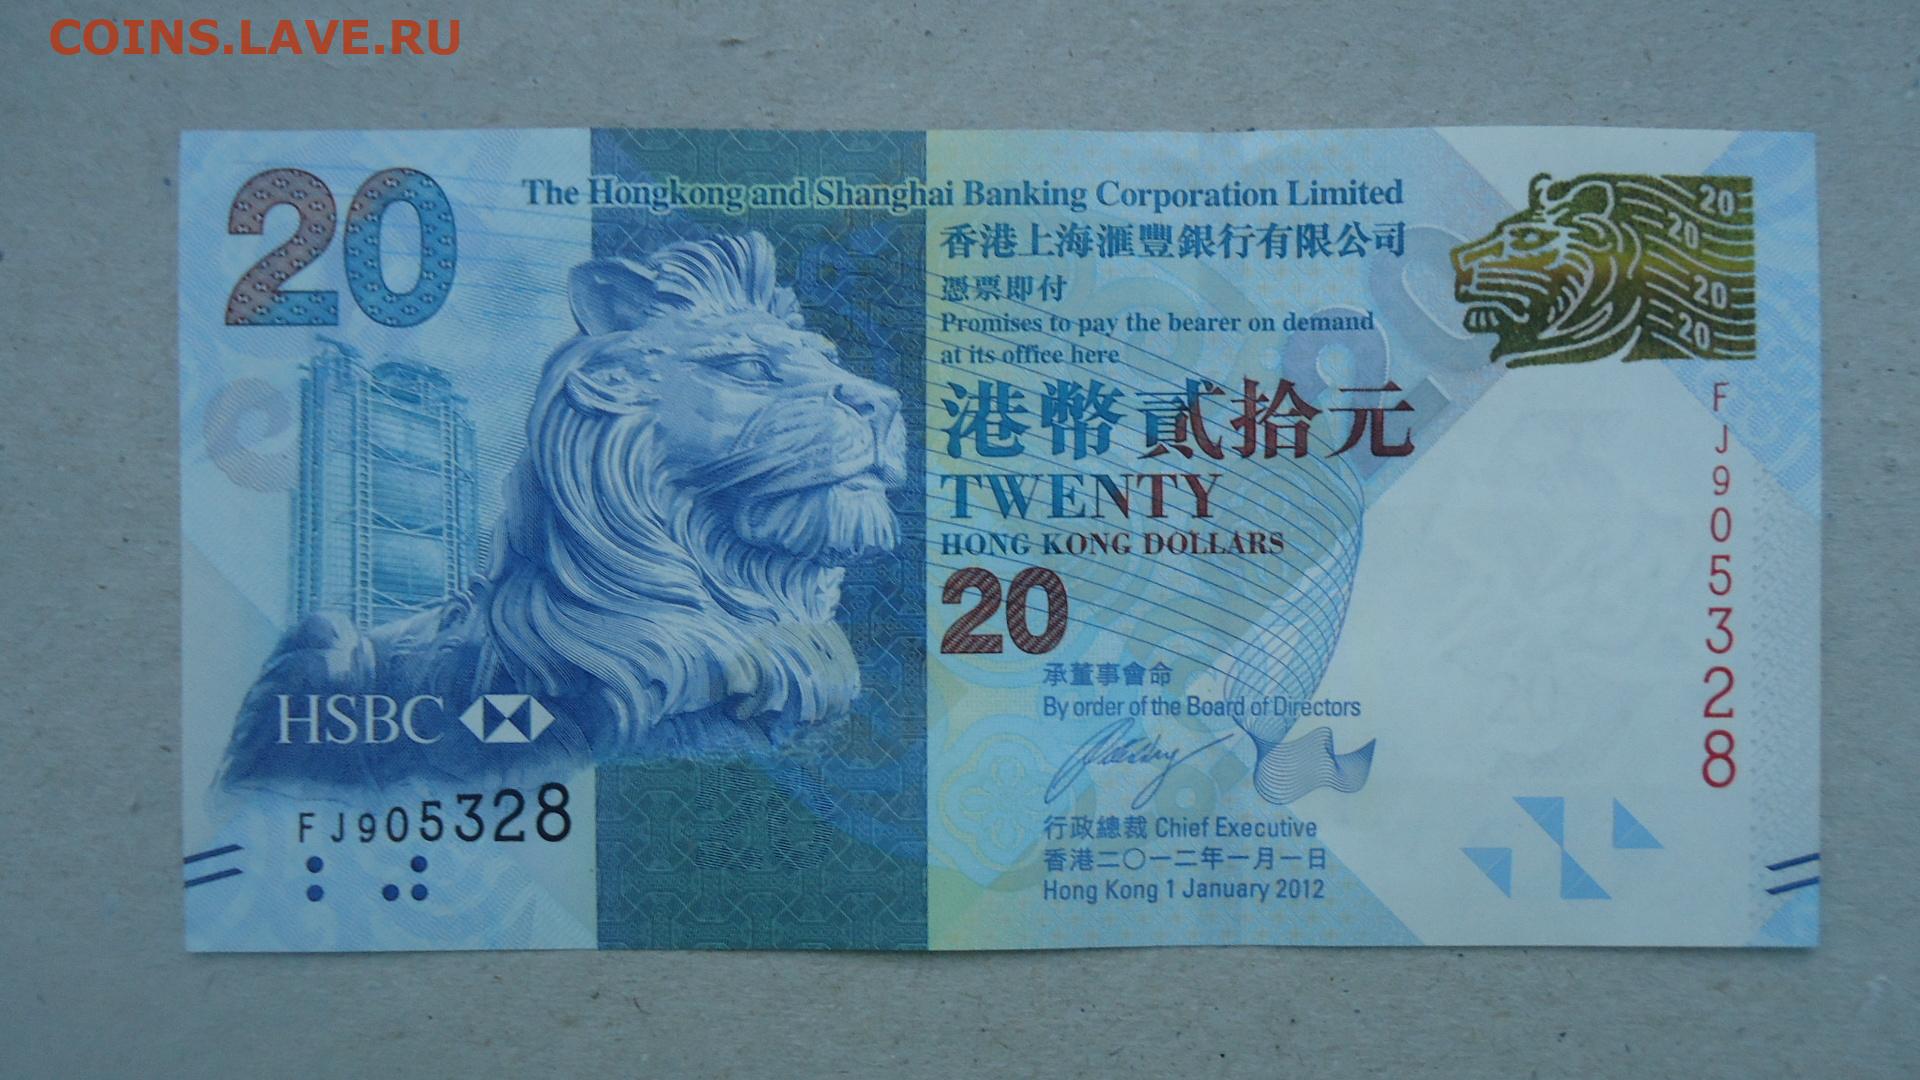 Hkd 899.00 в рублях. 20 Долларов Гонконга. Банкноты 20 долларов Гонконга. 20 Долларов 2008 Гонконг. 20 Гонконгских долларов в рублях.